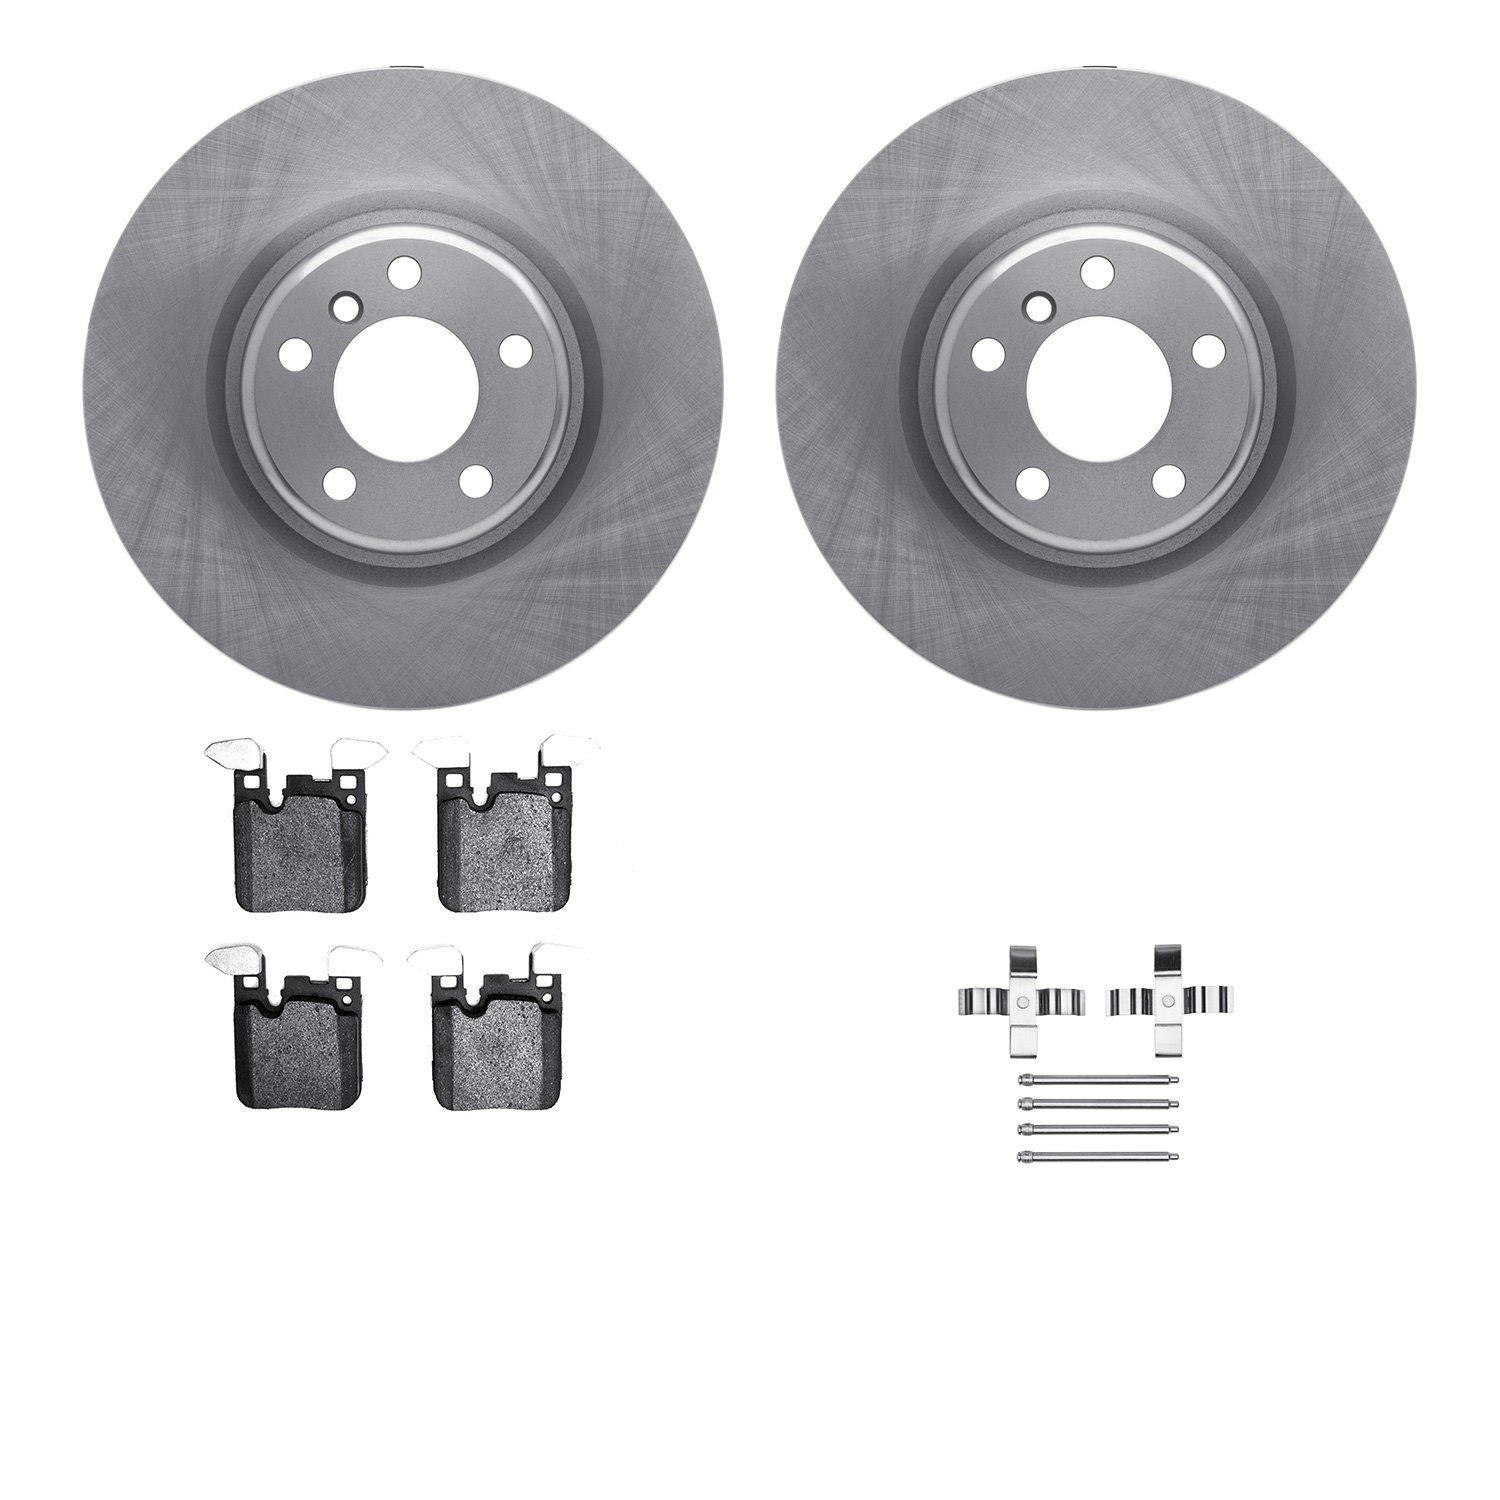 6612-31400 Brake Rotors w/5000 Euro Ceramic Brake Pads Kit with Hardware, 2012-2020 BMW, Position: Rear